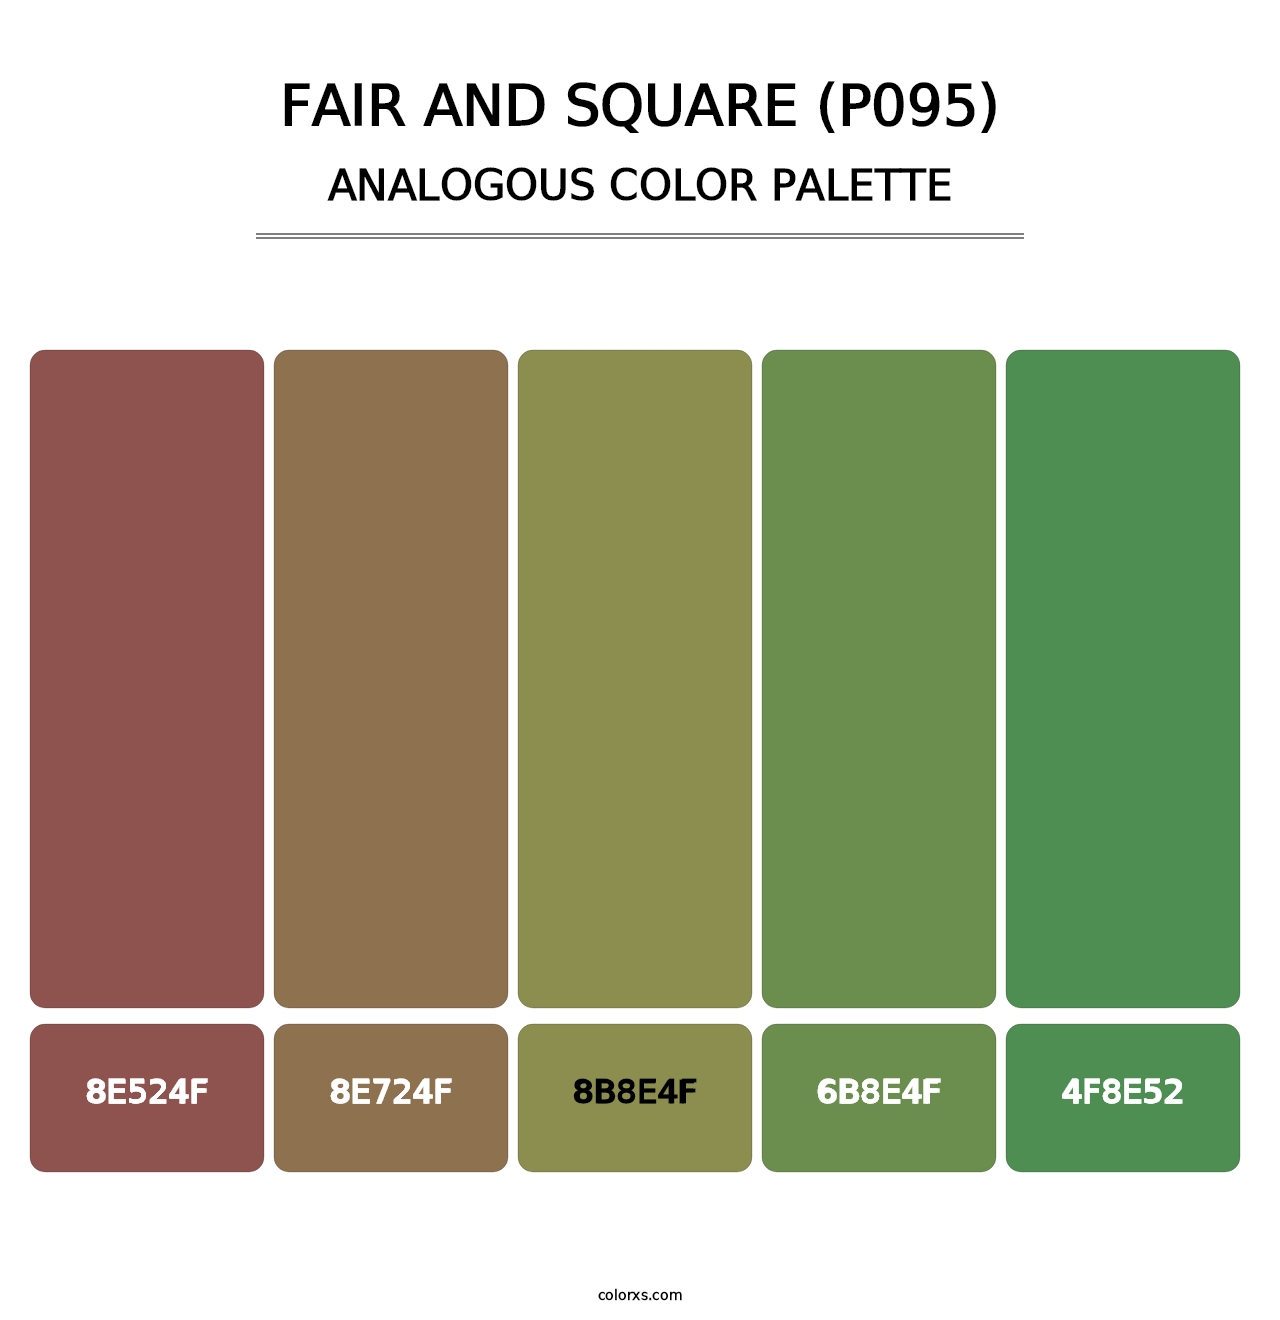 Fair and Square (P095) - Analogous Color Palette